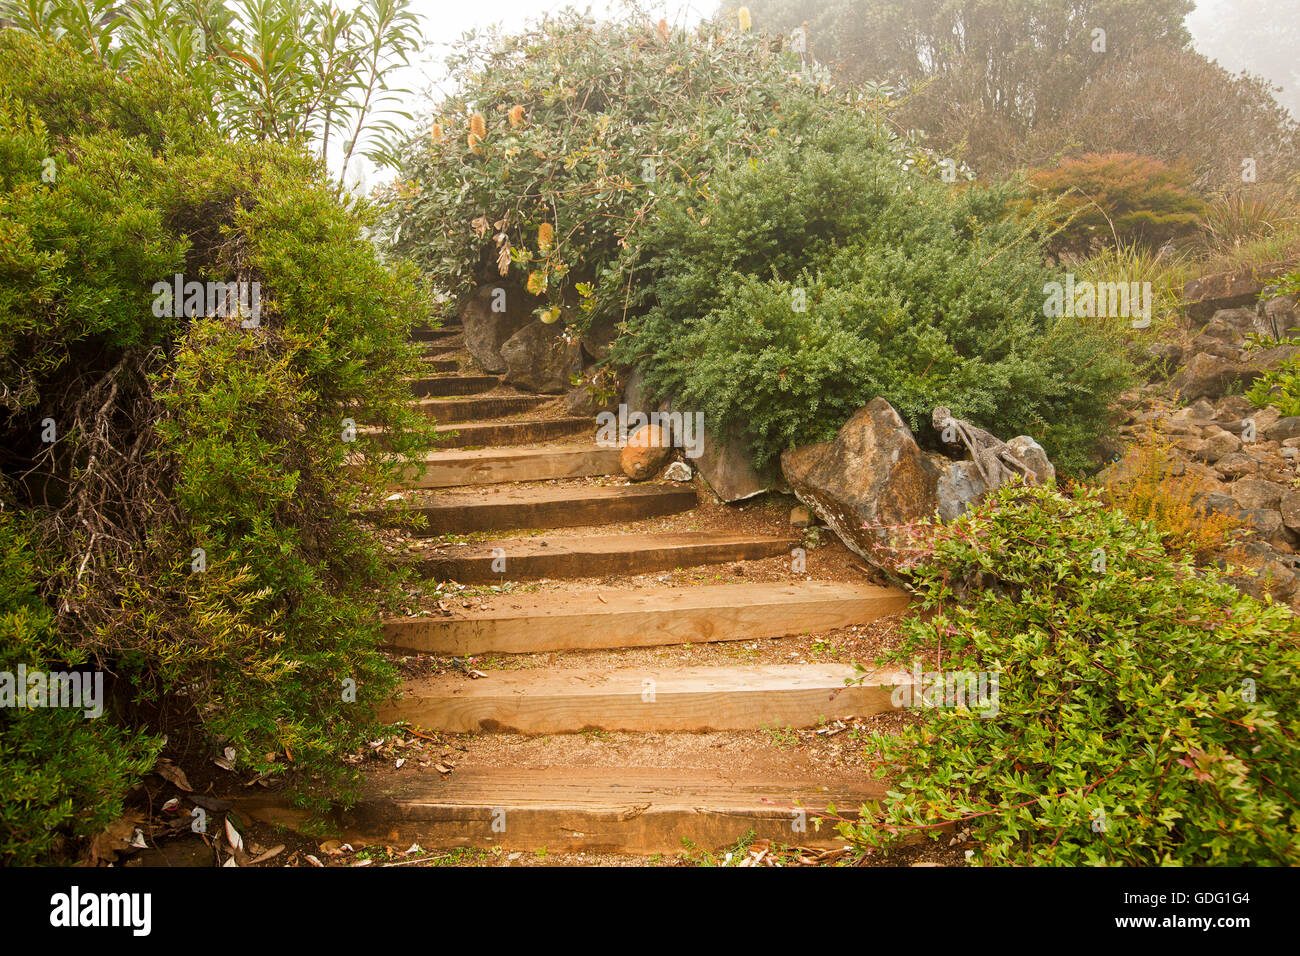 Ampia marrone a gradini in legno che conduce attraverso il giardino di arbusti fioriti drappeggiati con leggera nebulizzazione Foto Stock